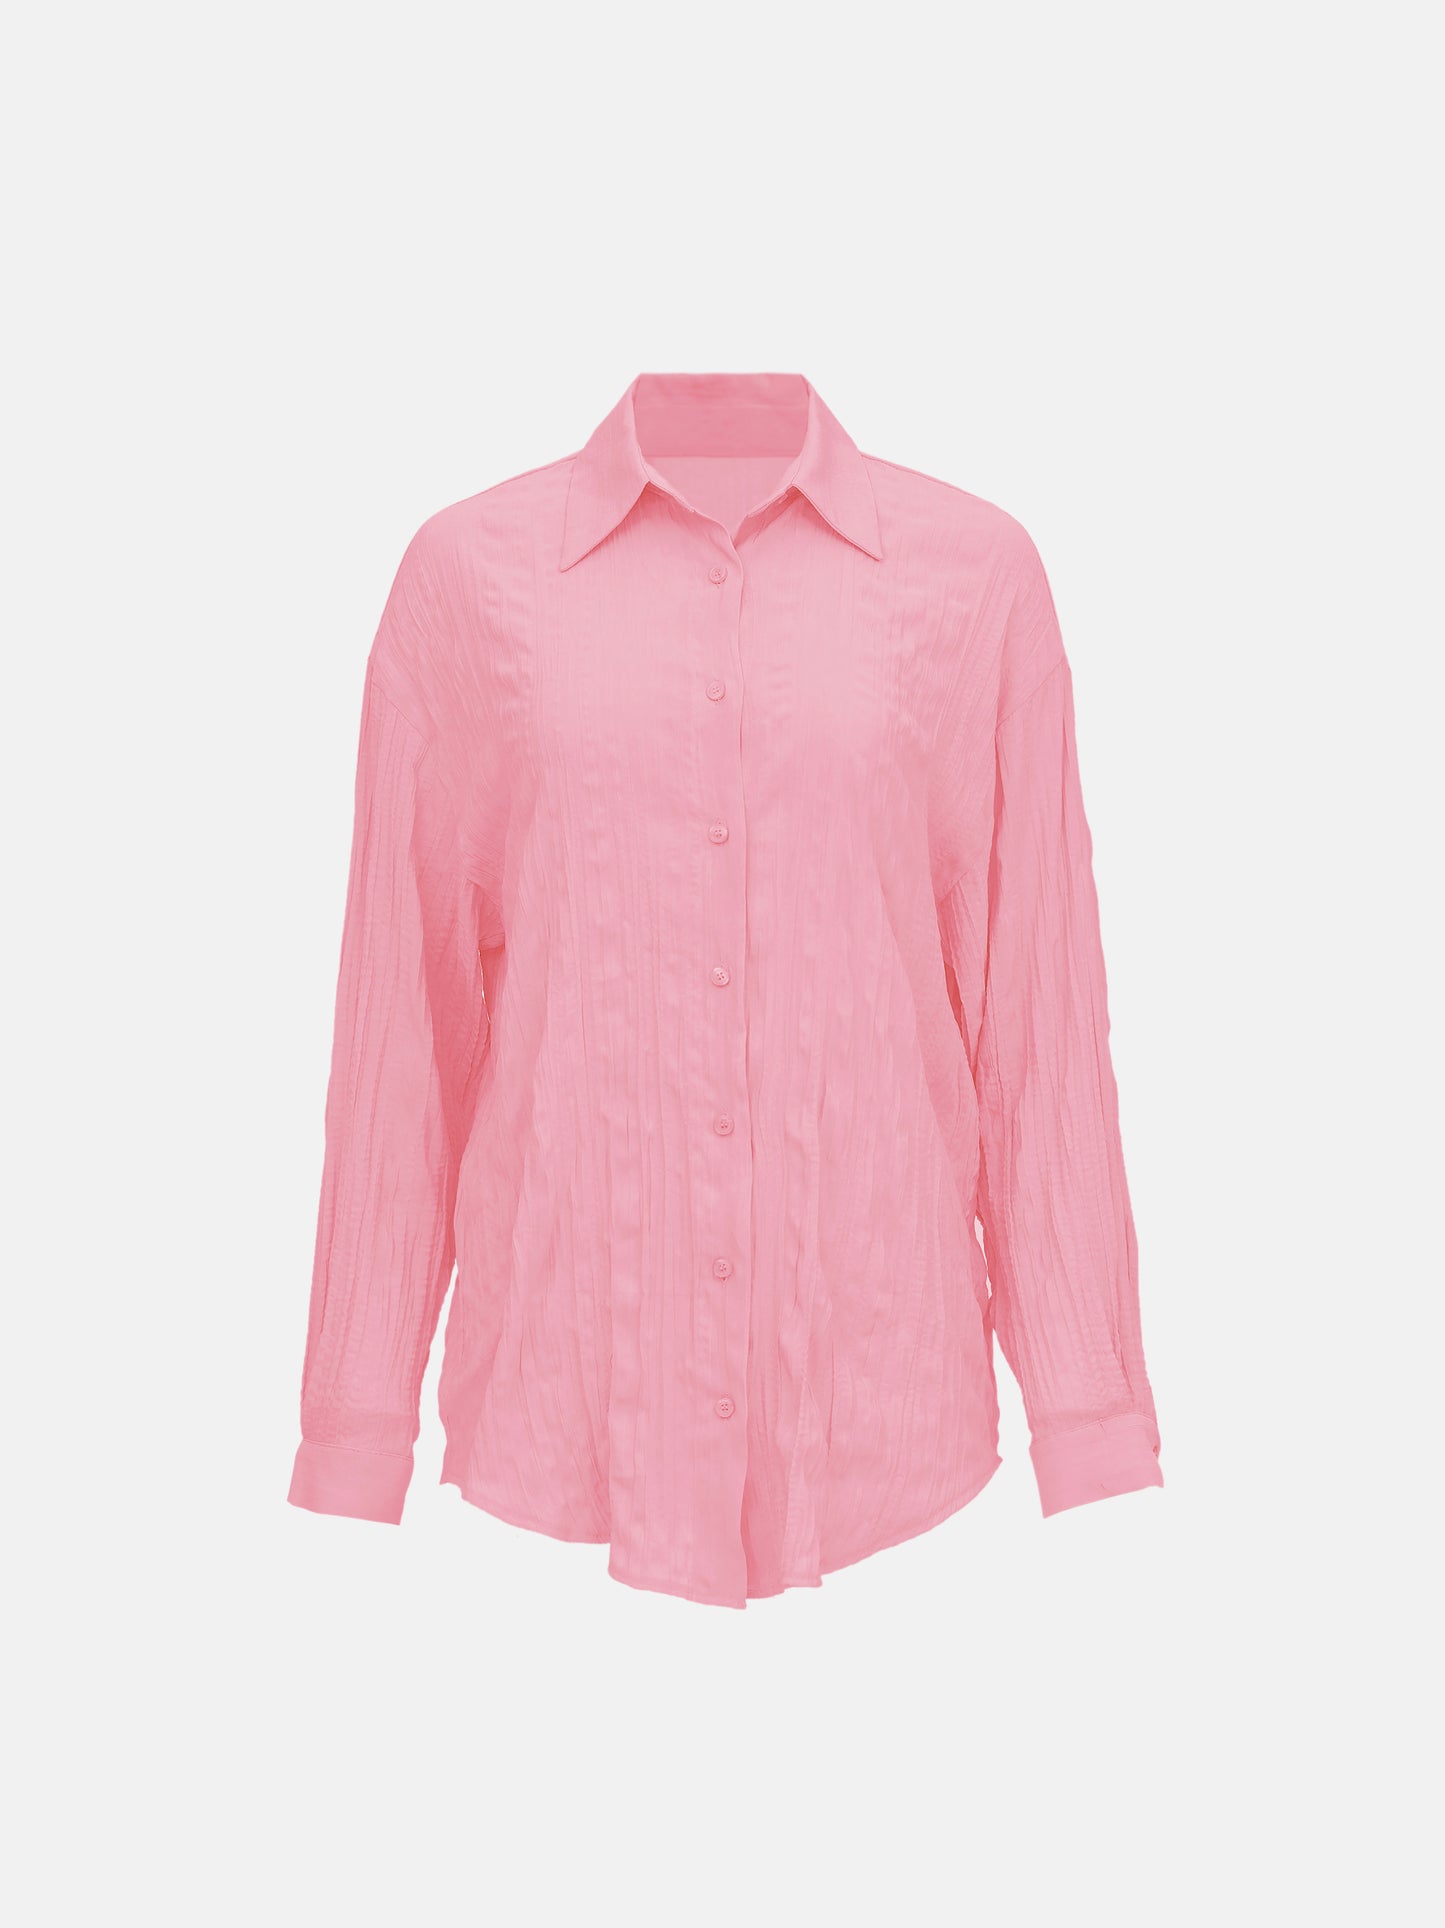 Crinkled Garment-Pleated Shirt, Rose